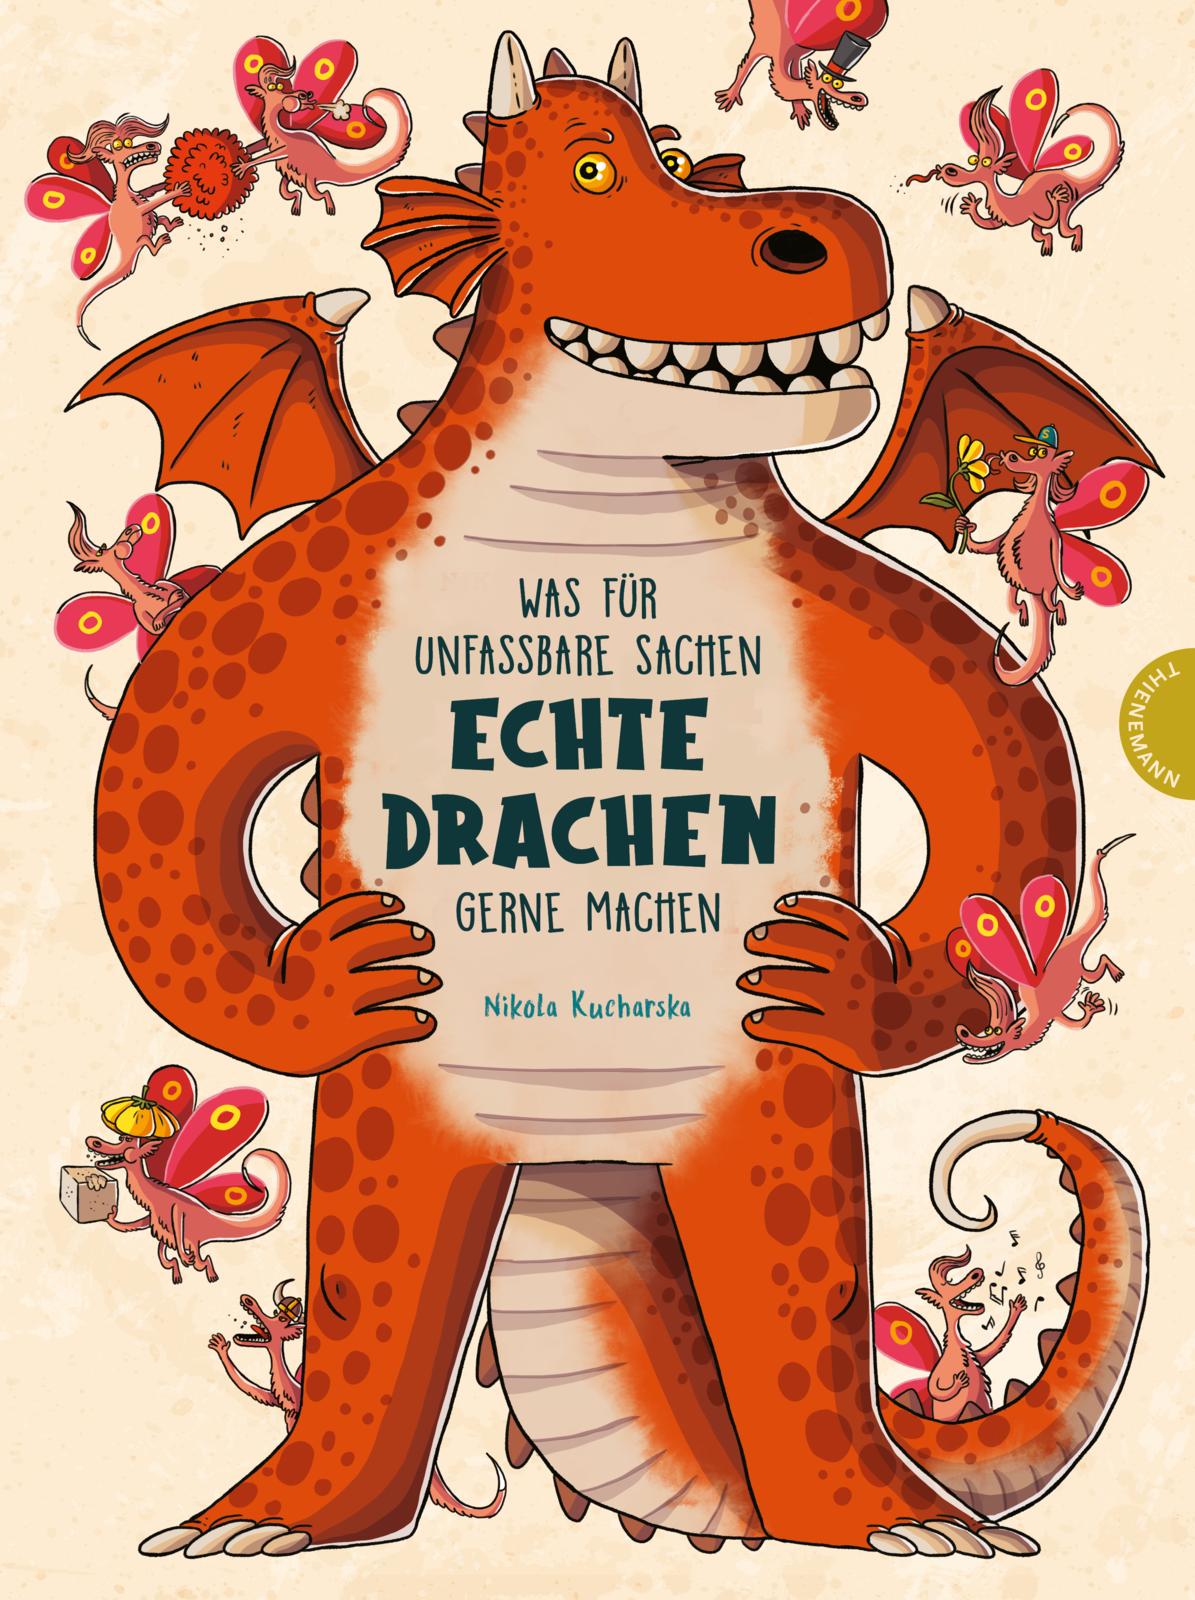 Buchcover "Was für unfassbare Sachen echte Drachen gerne machen", Thienemann